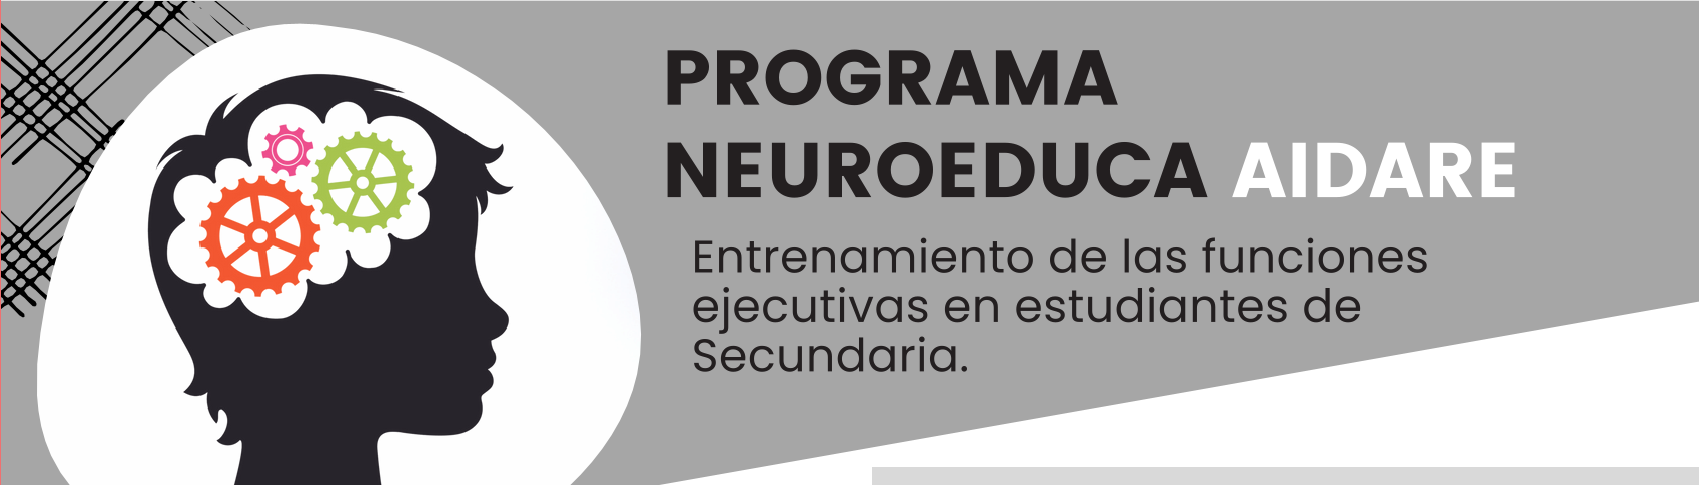 Imagen de la noticia: Programa NeuroEduca AIDARE [Actualizado]